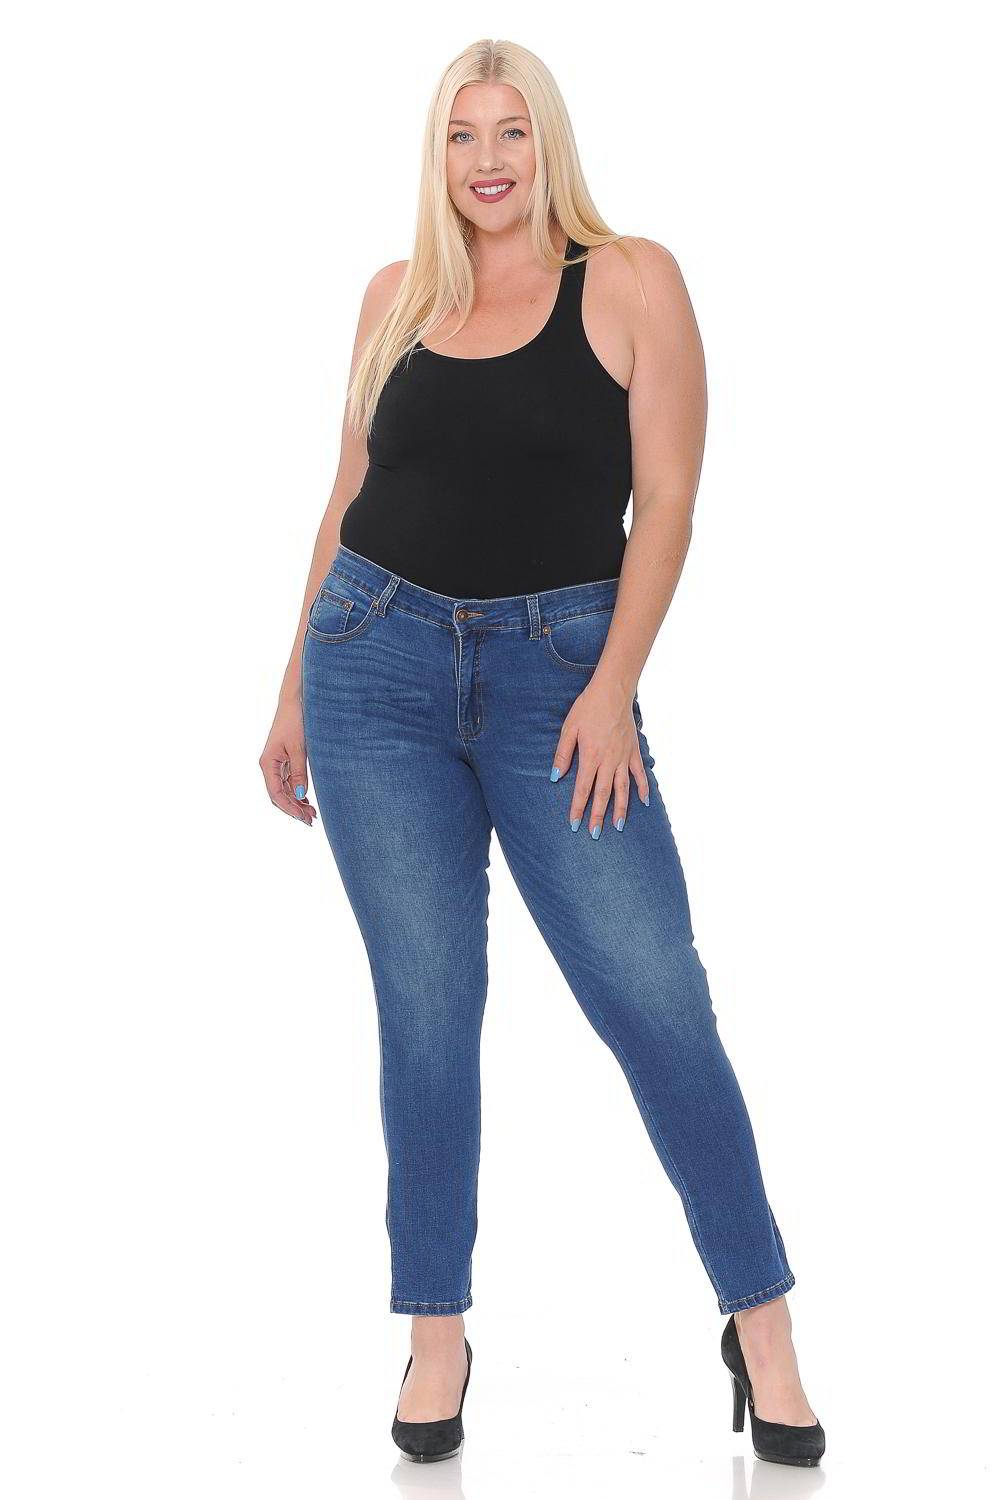 Size 14 Women's Jeans